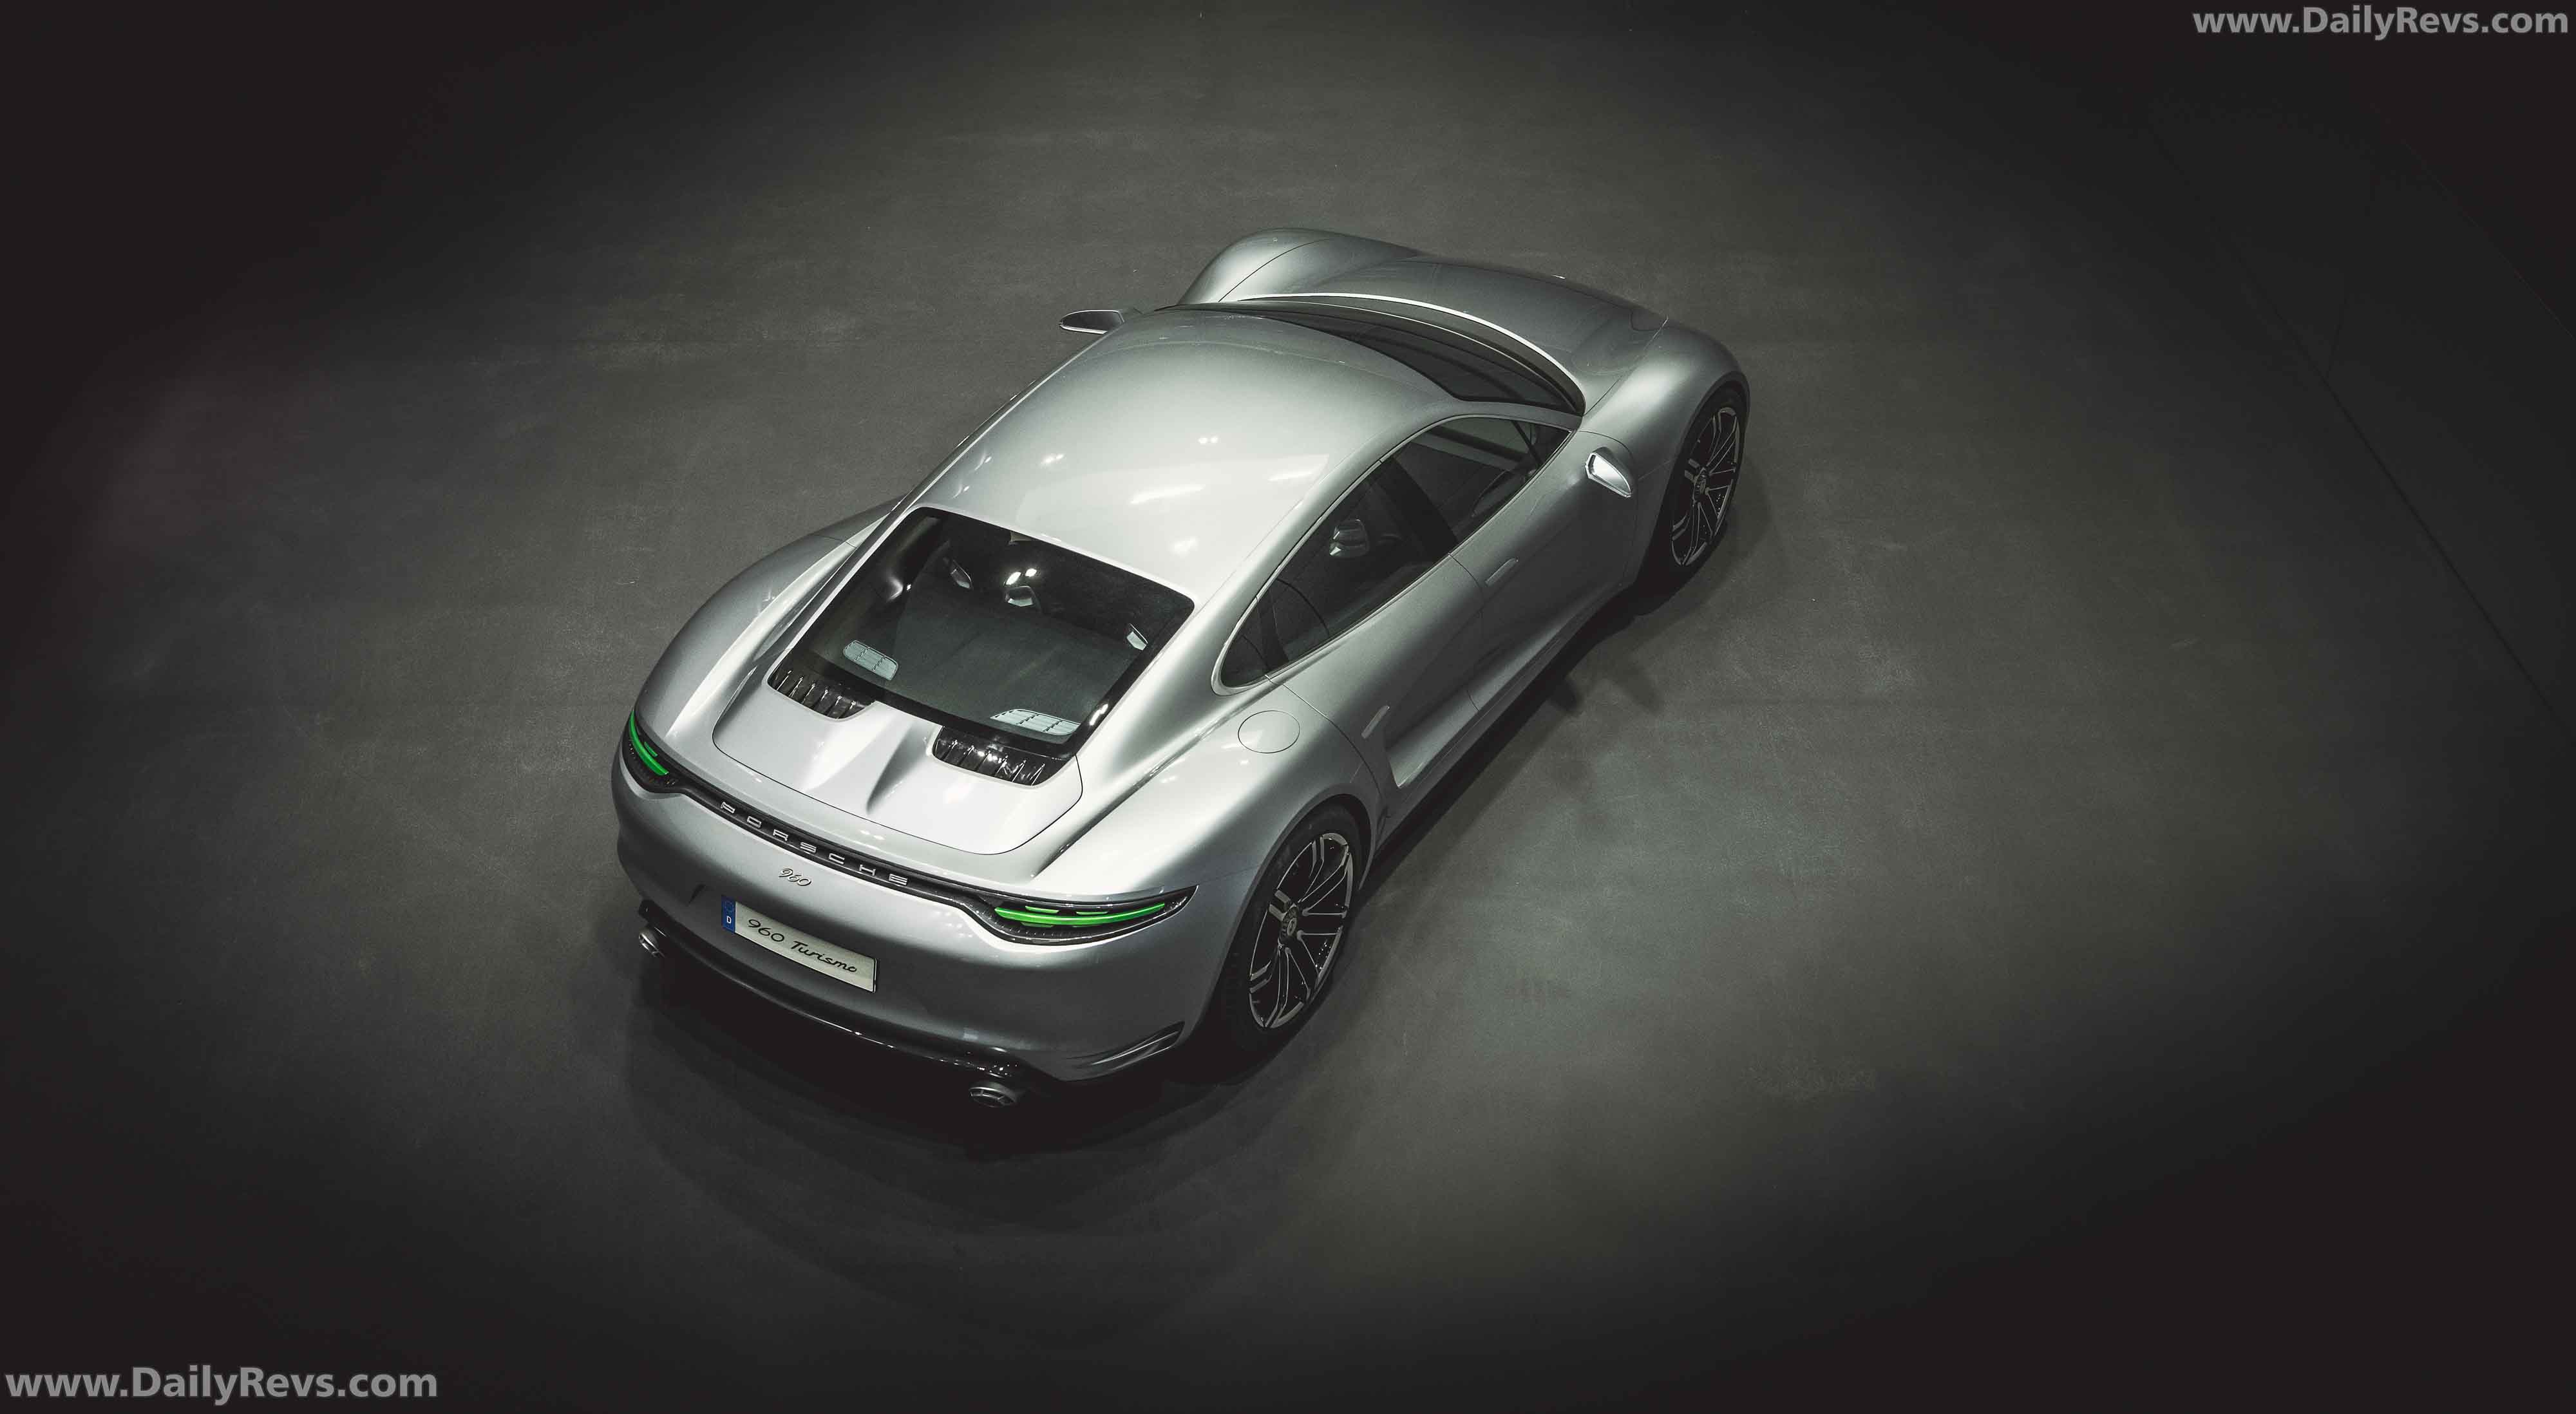 2016 Porsche 960 Vision Turismo Concept